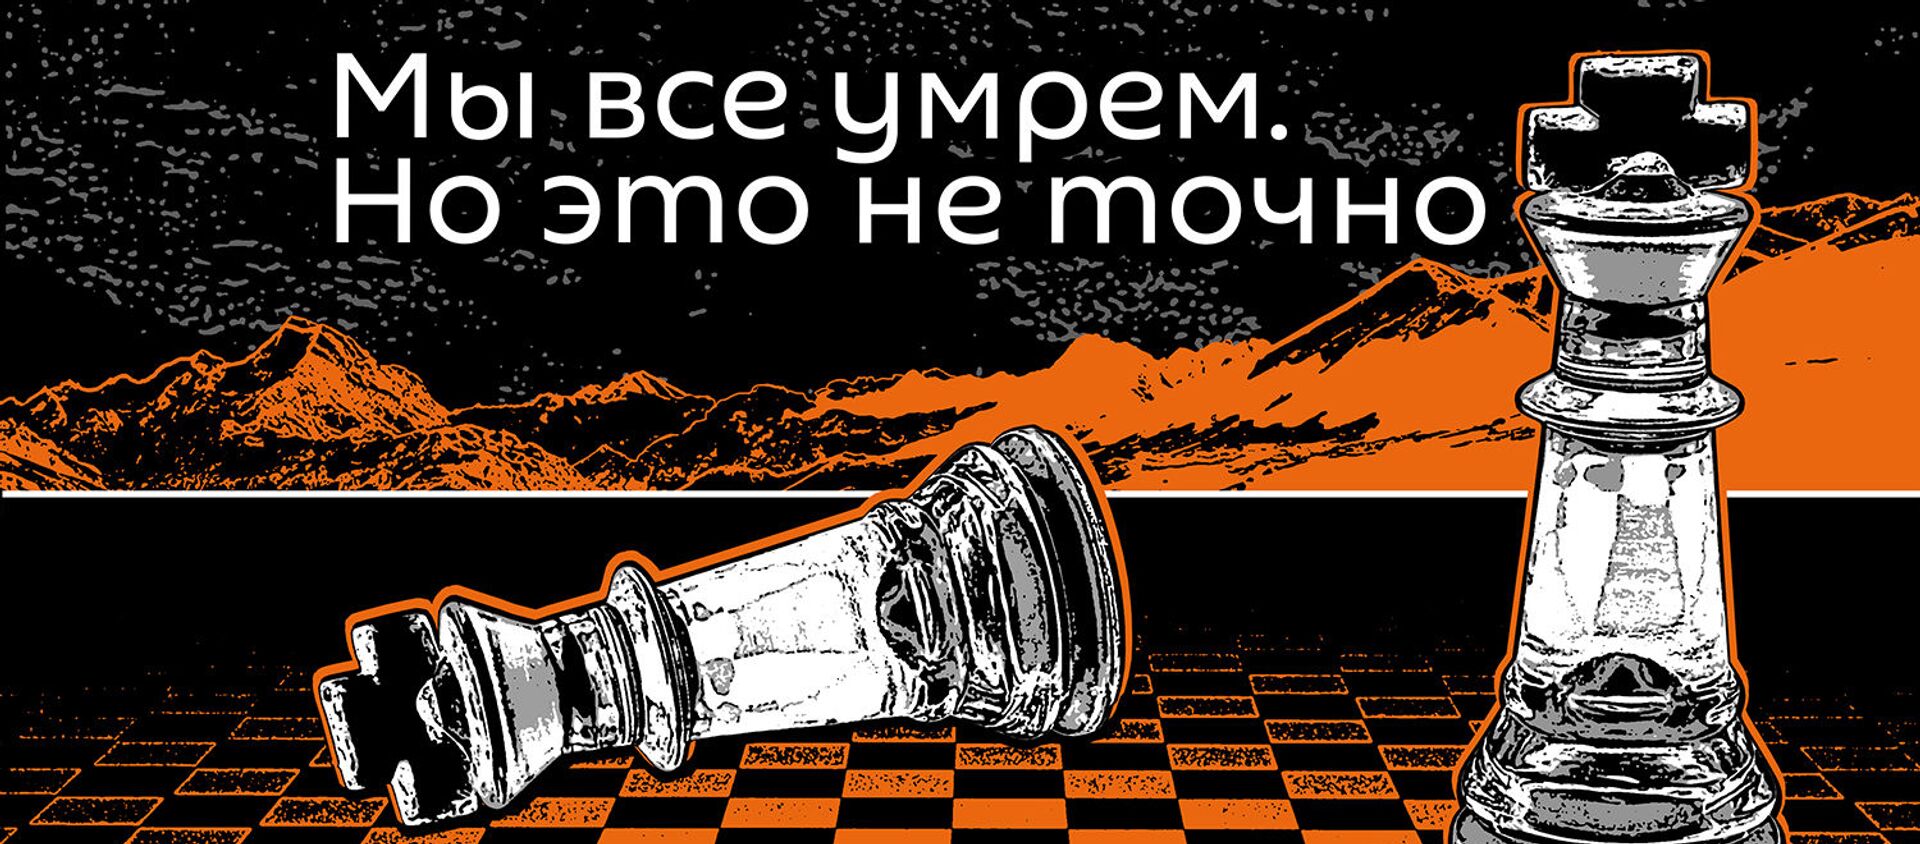 Мы все умрем, но это неточно  - Sputnik Казахстан, 1920, 06.10.2019